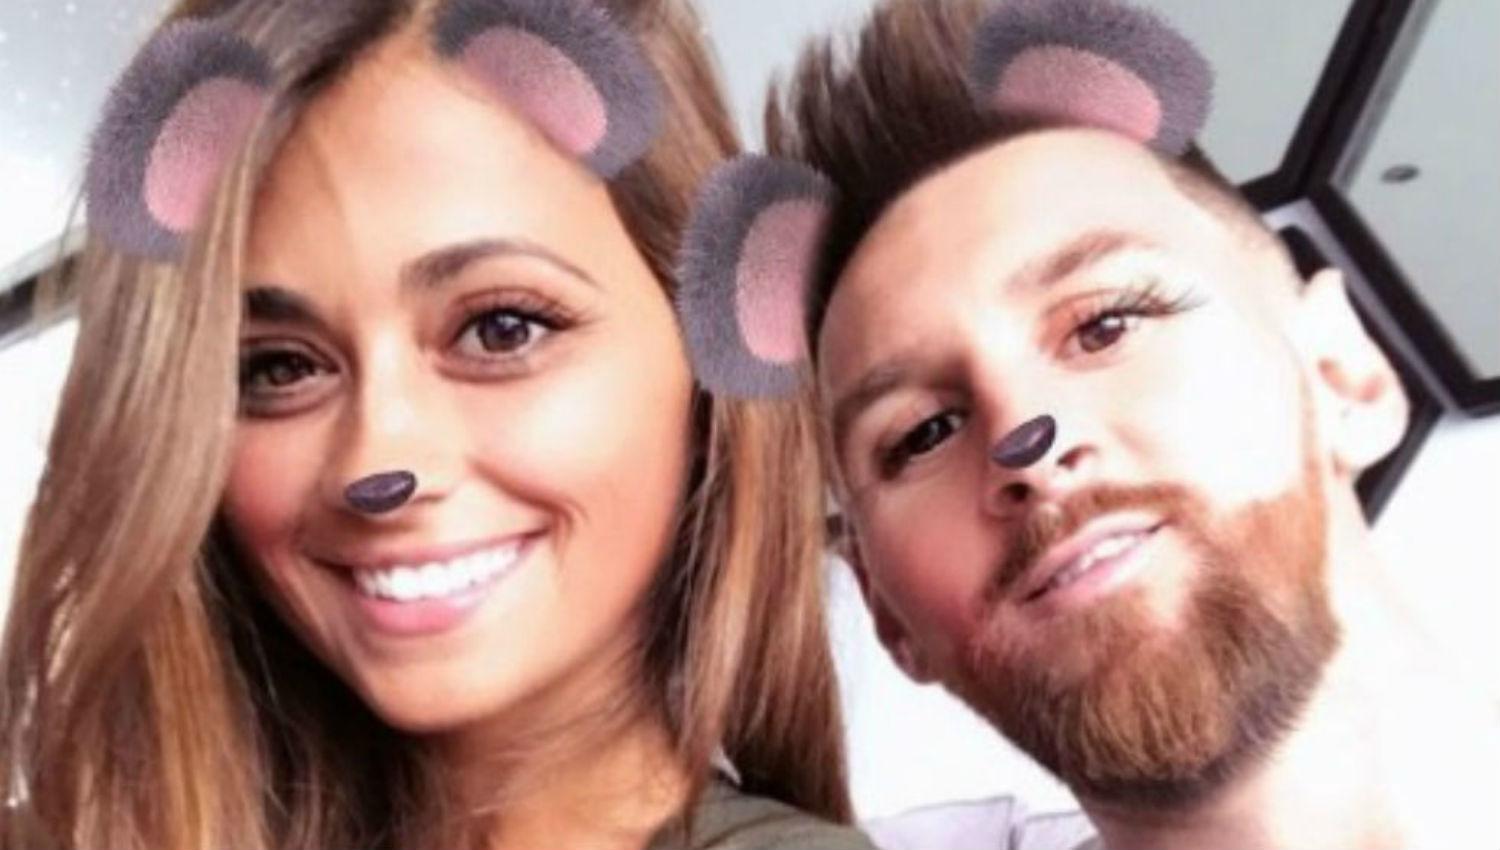 EN LAS REDES. La pareja se divierte en las redes sociales con una app que les permite 'convertirse' en animales y criaturas de animación.